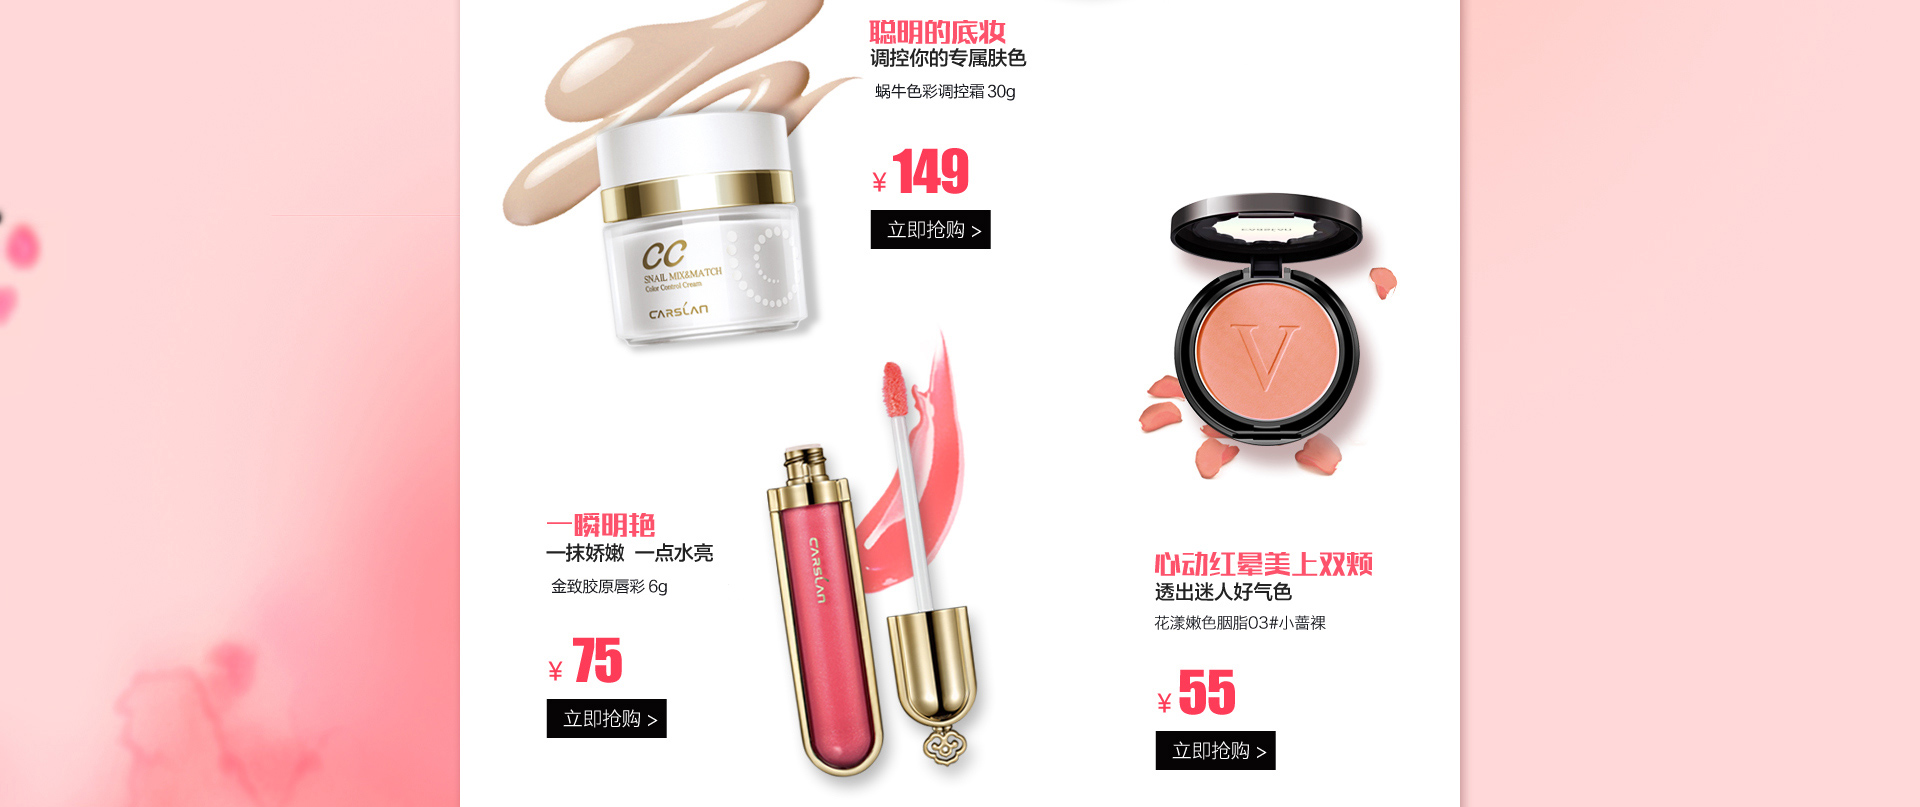 卡姿兰品牌街 - 京东个护化妆|香水彩妆专题活动